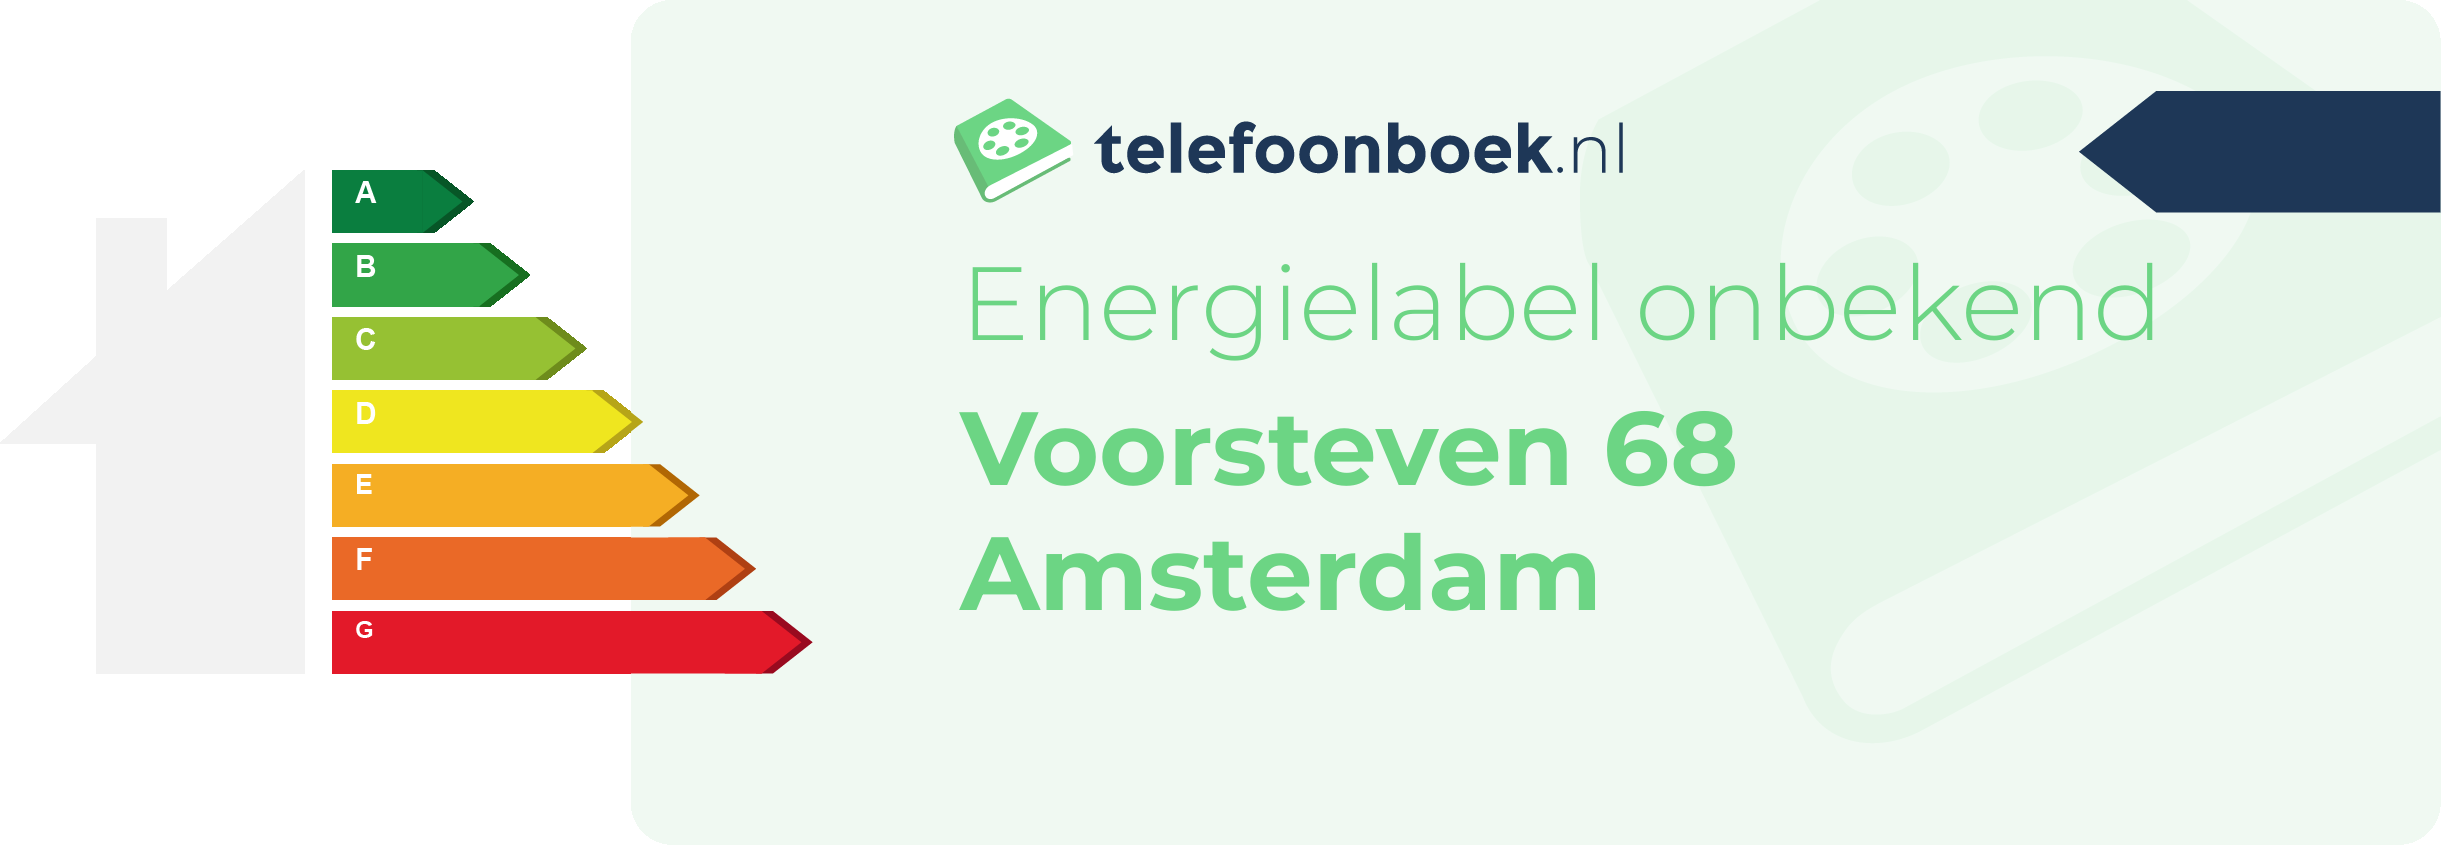 Energielabel Voorsteven 68 Amsterdam